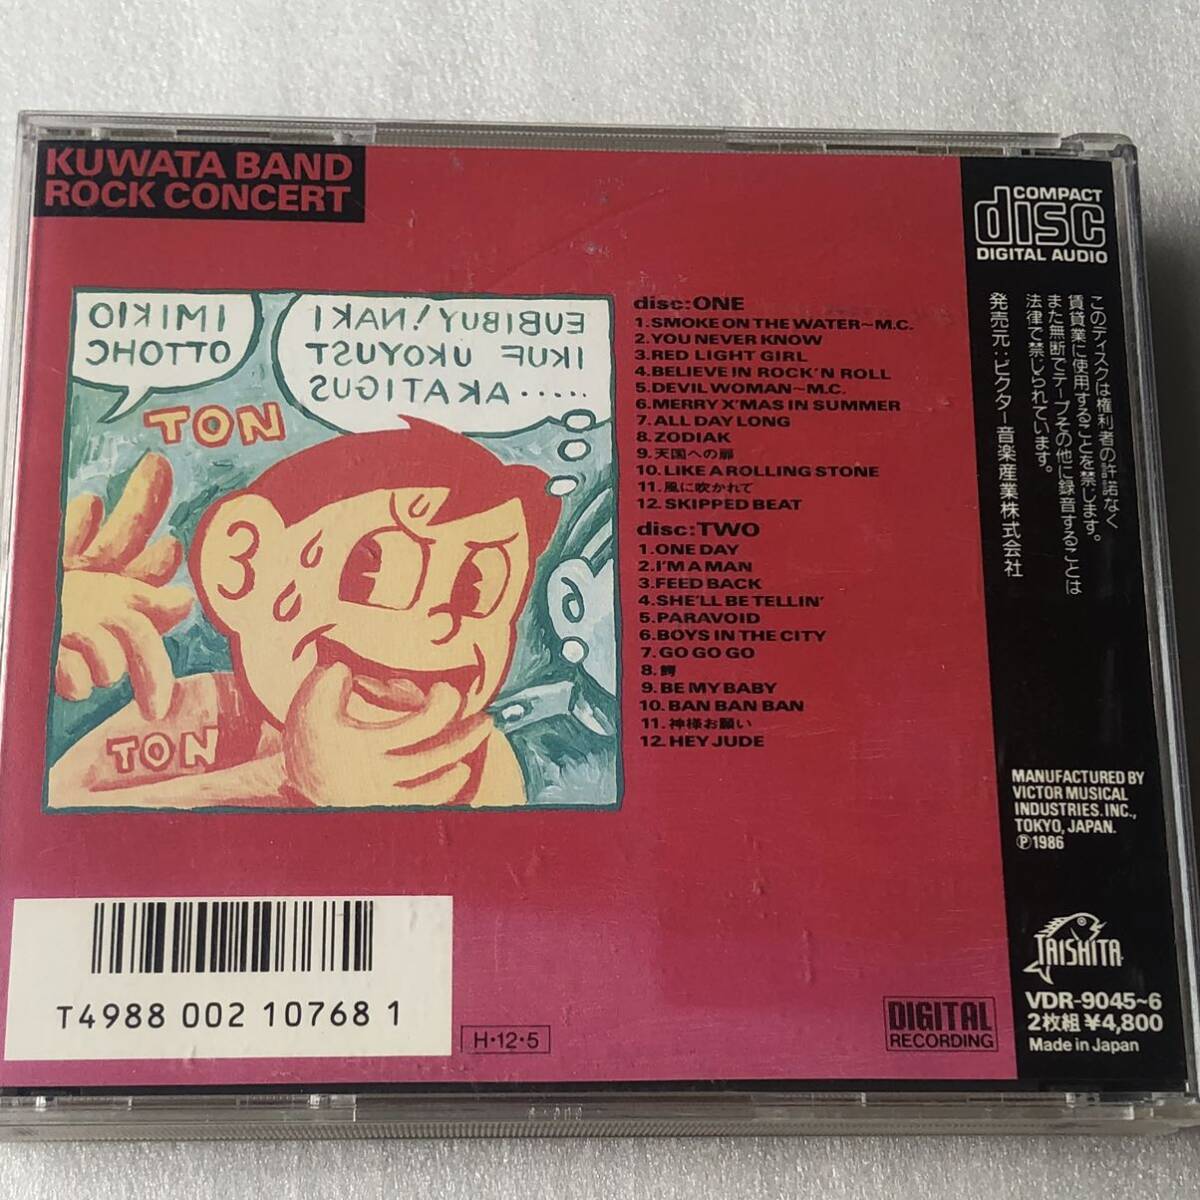 中古CD KUWATA BAND/ROCK CONCERT(2CD) (1986年)_画像2